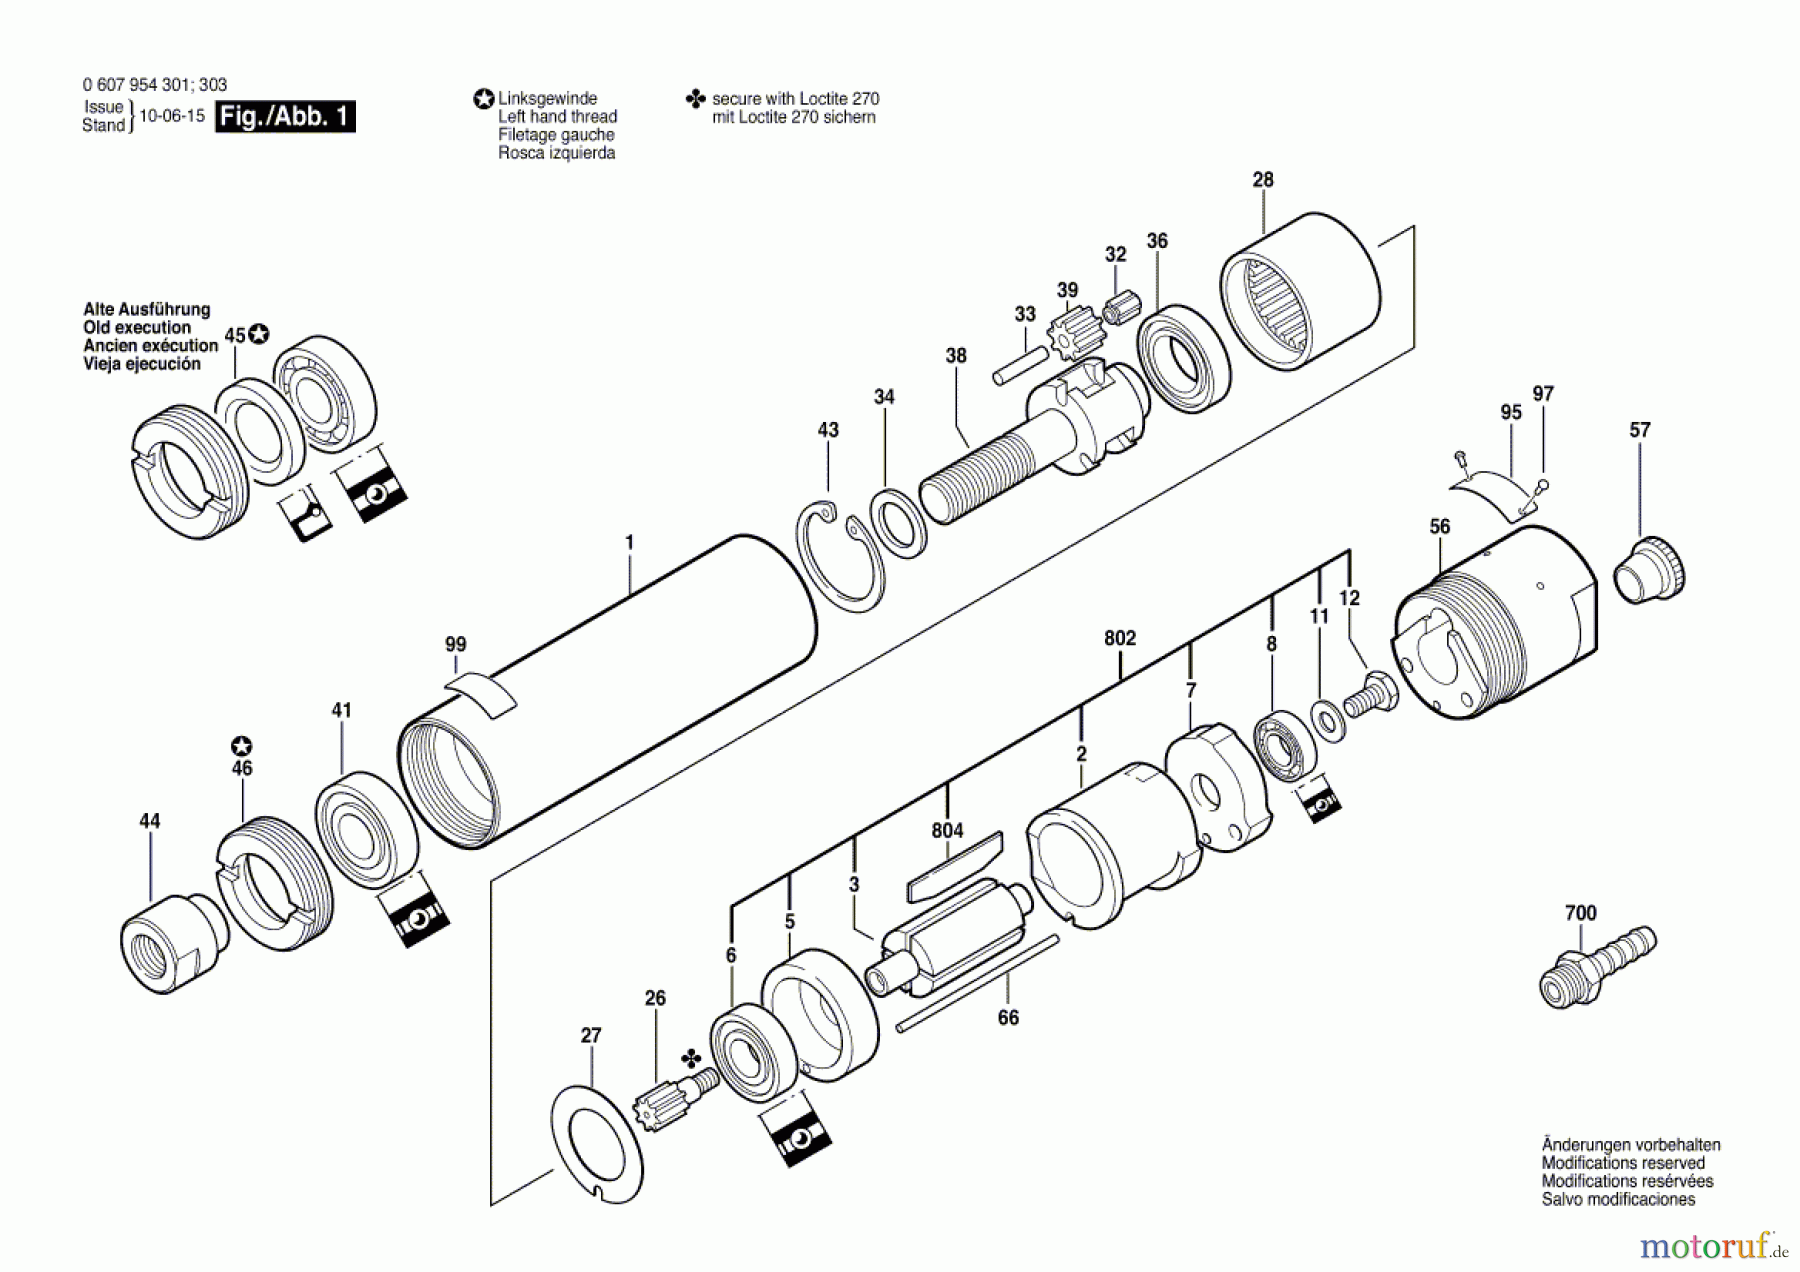  Bosch Werkzeug Einbaumotor 120 WATT-SERIE Seite 1